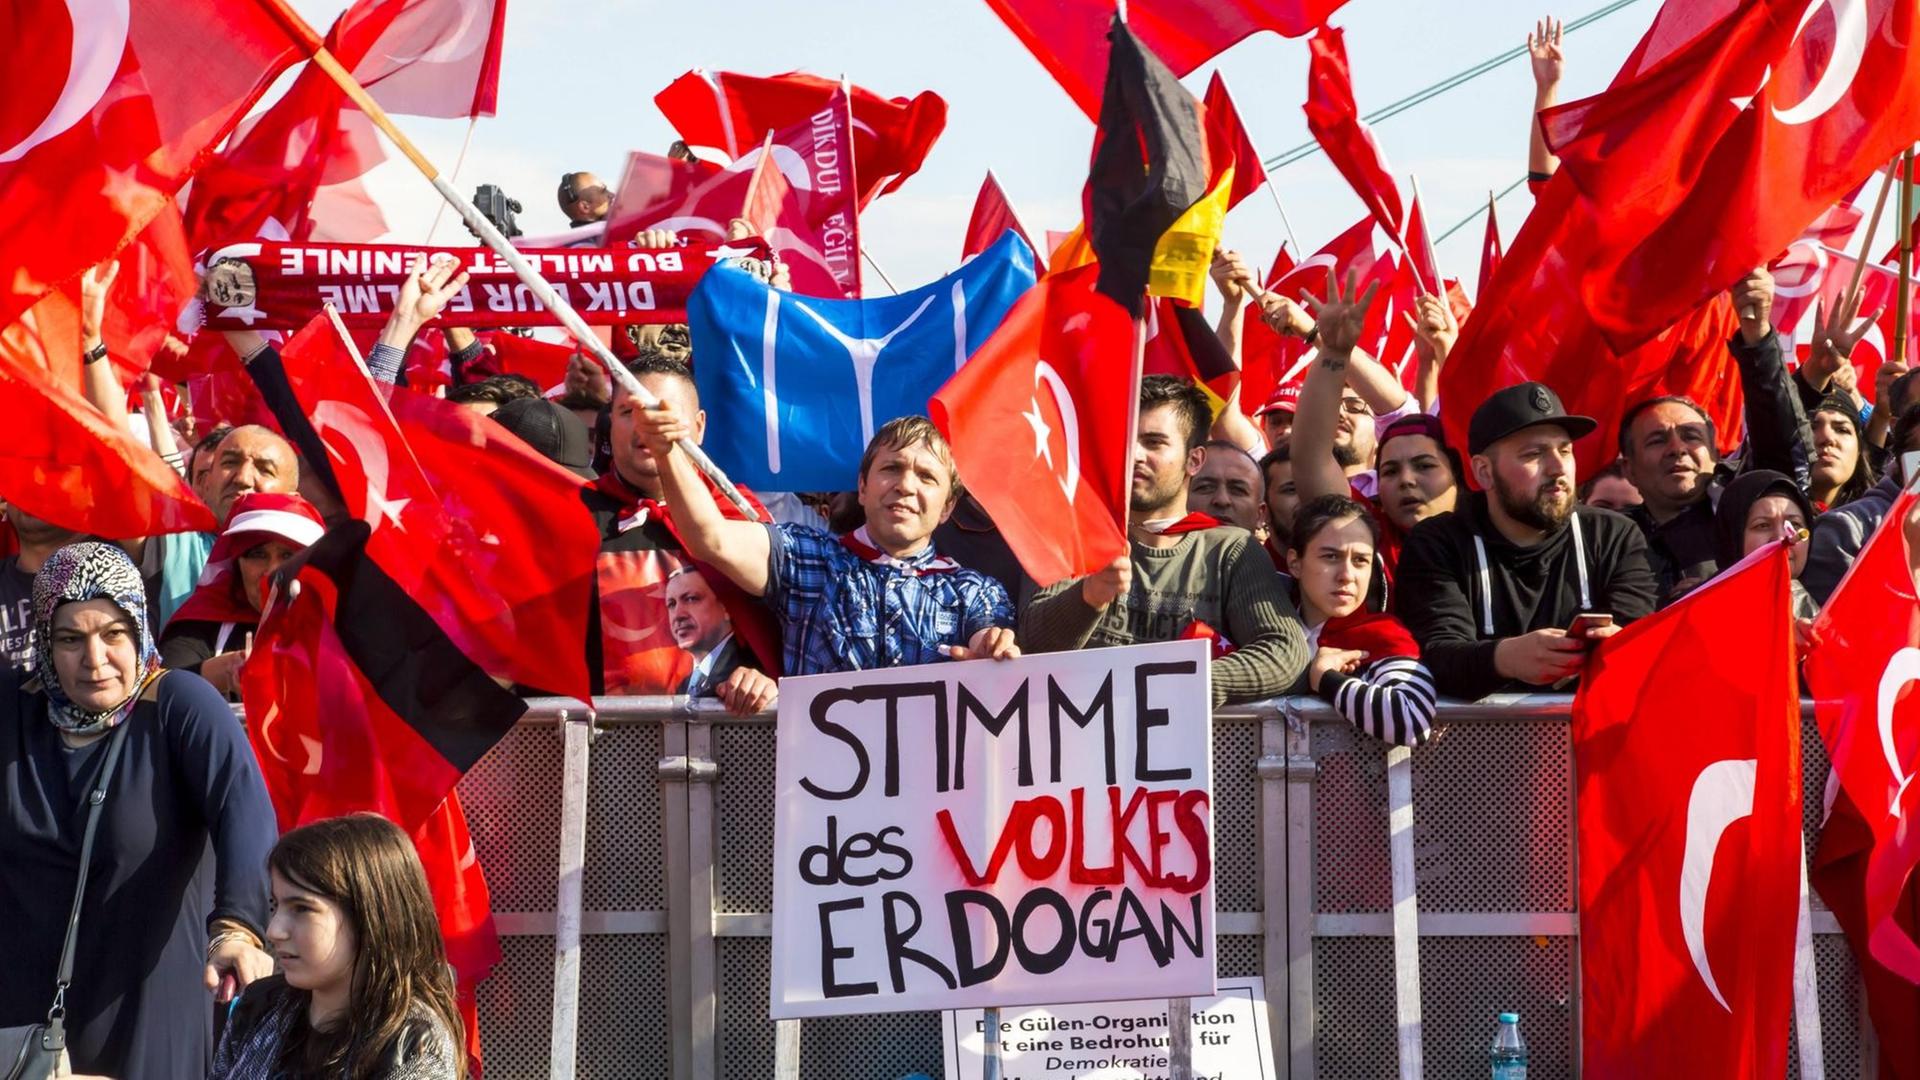 Kundgebung von Türken gegen den Putschversuch in der Türkei und für den türkischen Präsidenten Recep Erdogan in Köln am 31. Juli 2016. Zu sehen ist auch die blaue Flagge aus der Serie "Diriliş Ertuğrul".